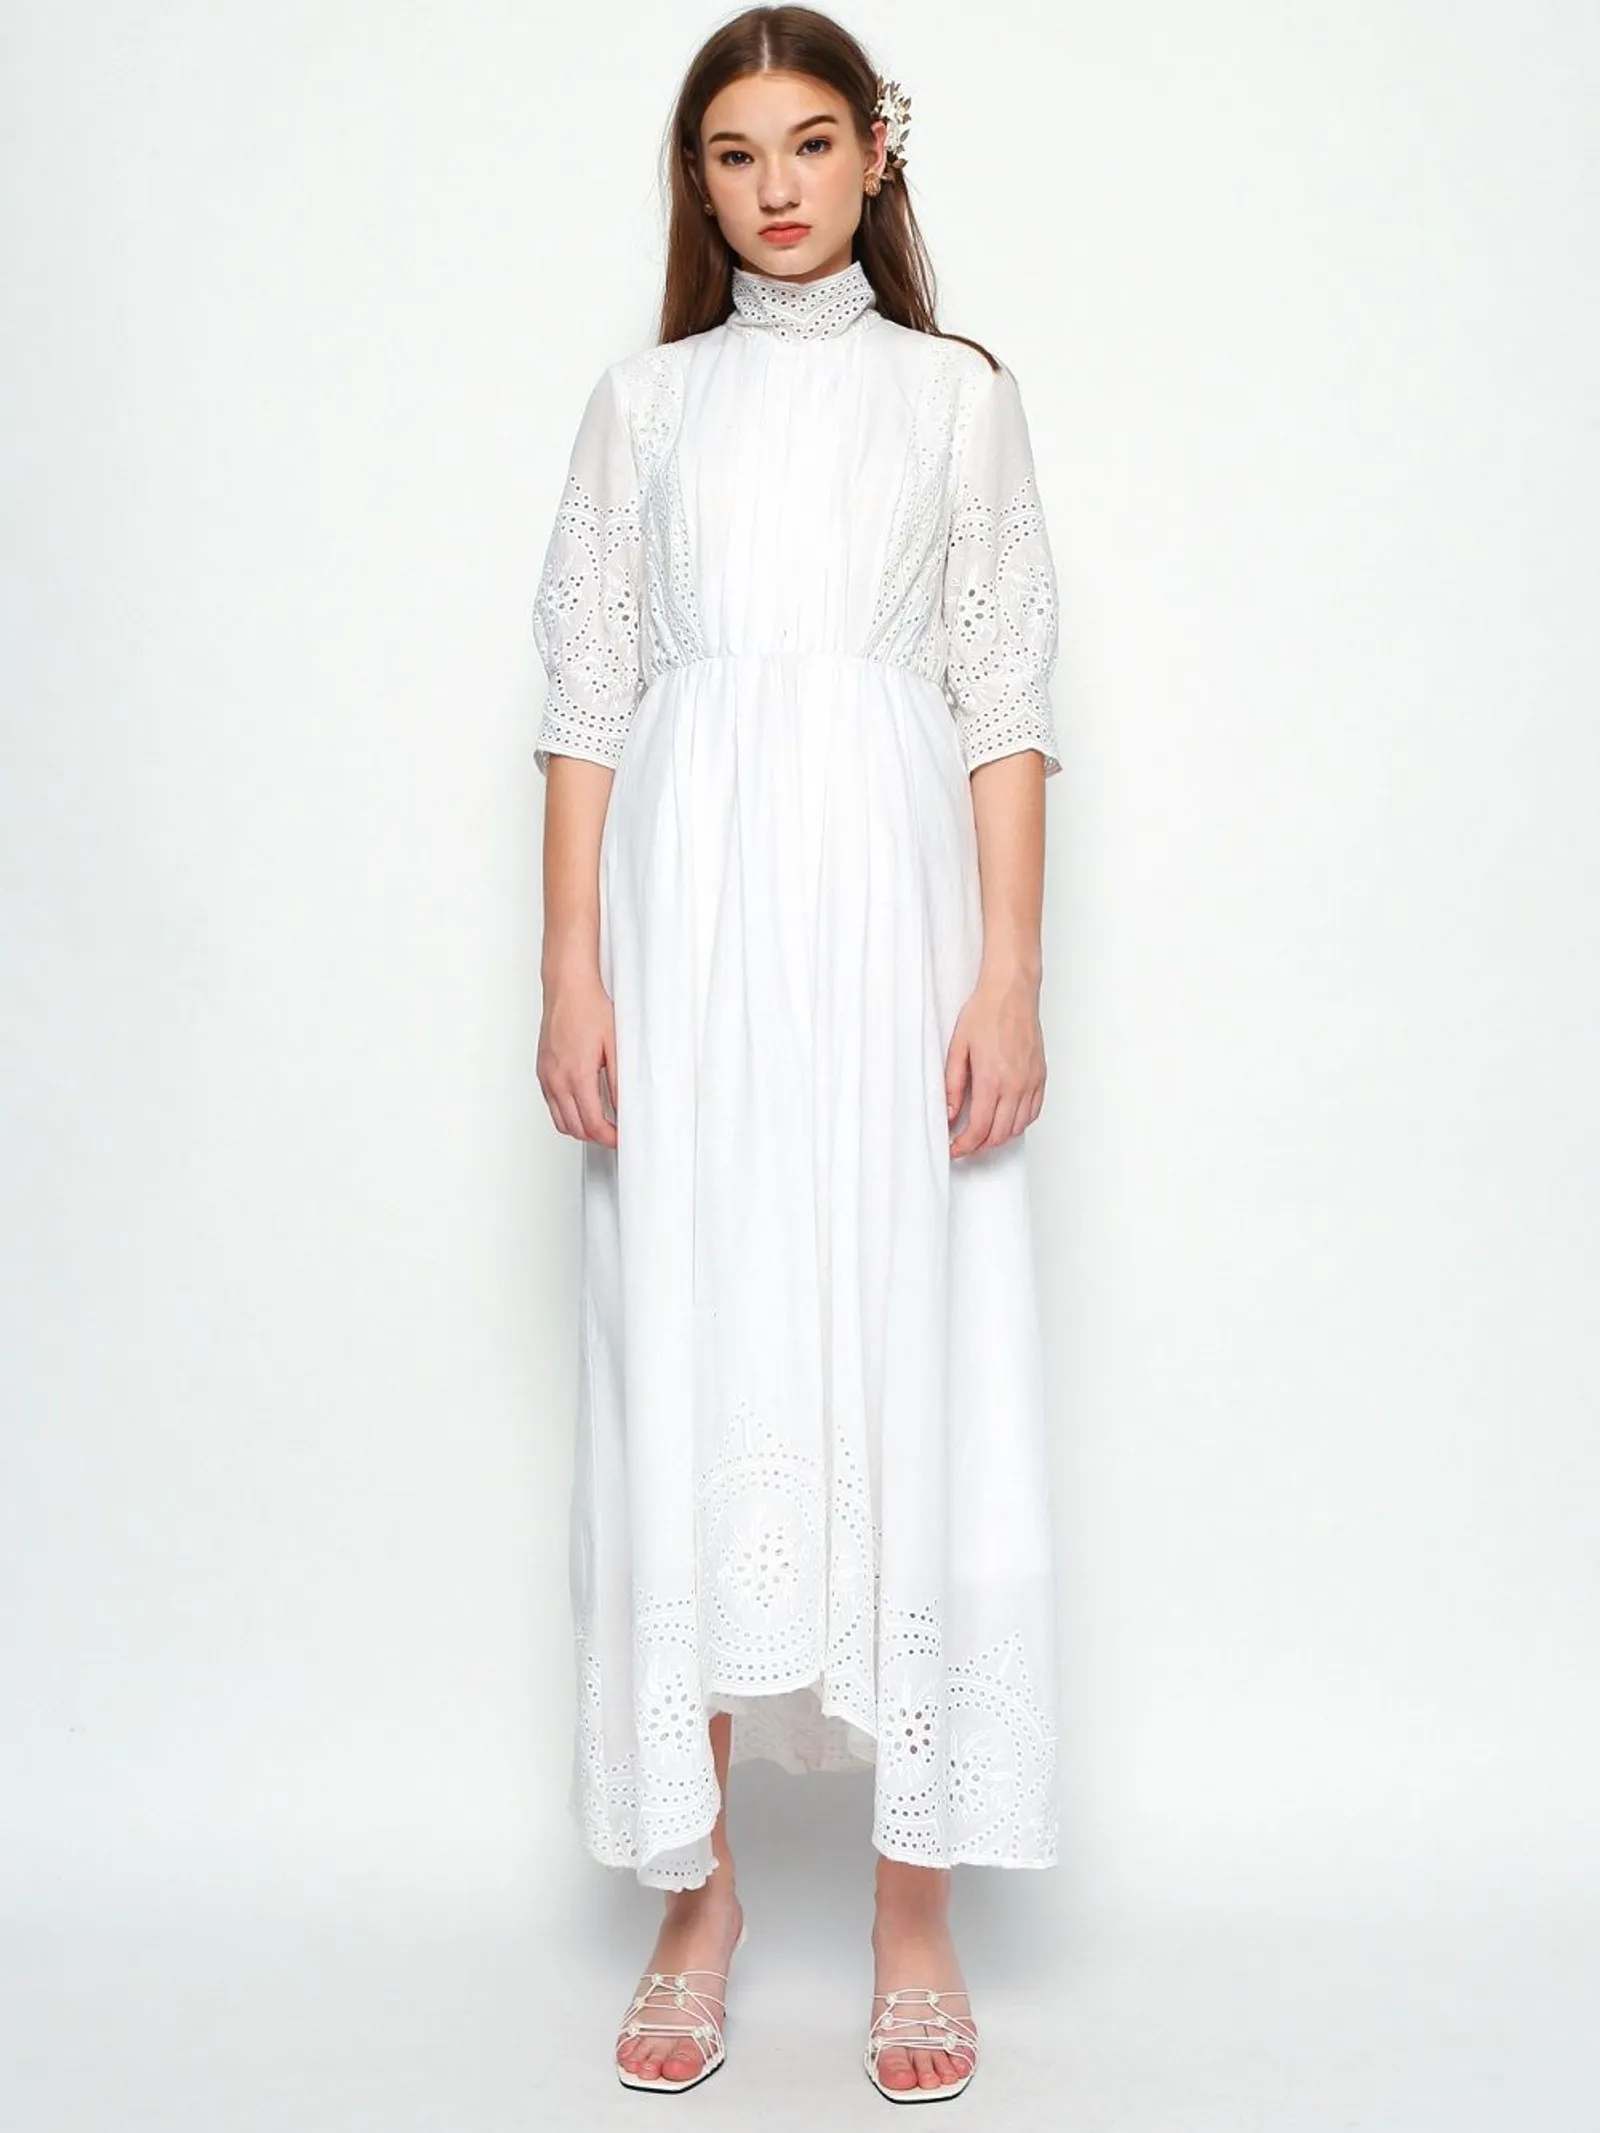 Rekomendasi Dress Putih nan Manis di Minggu Ini